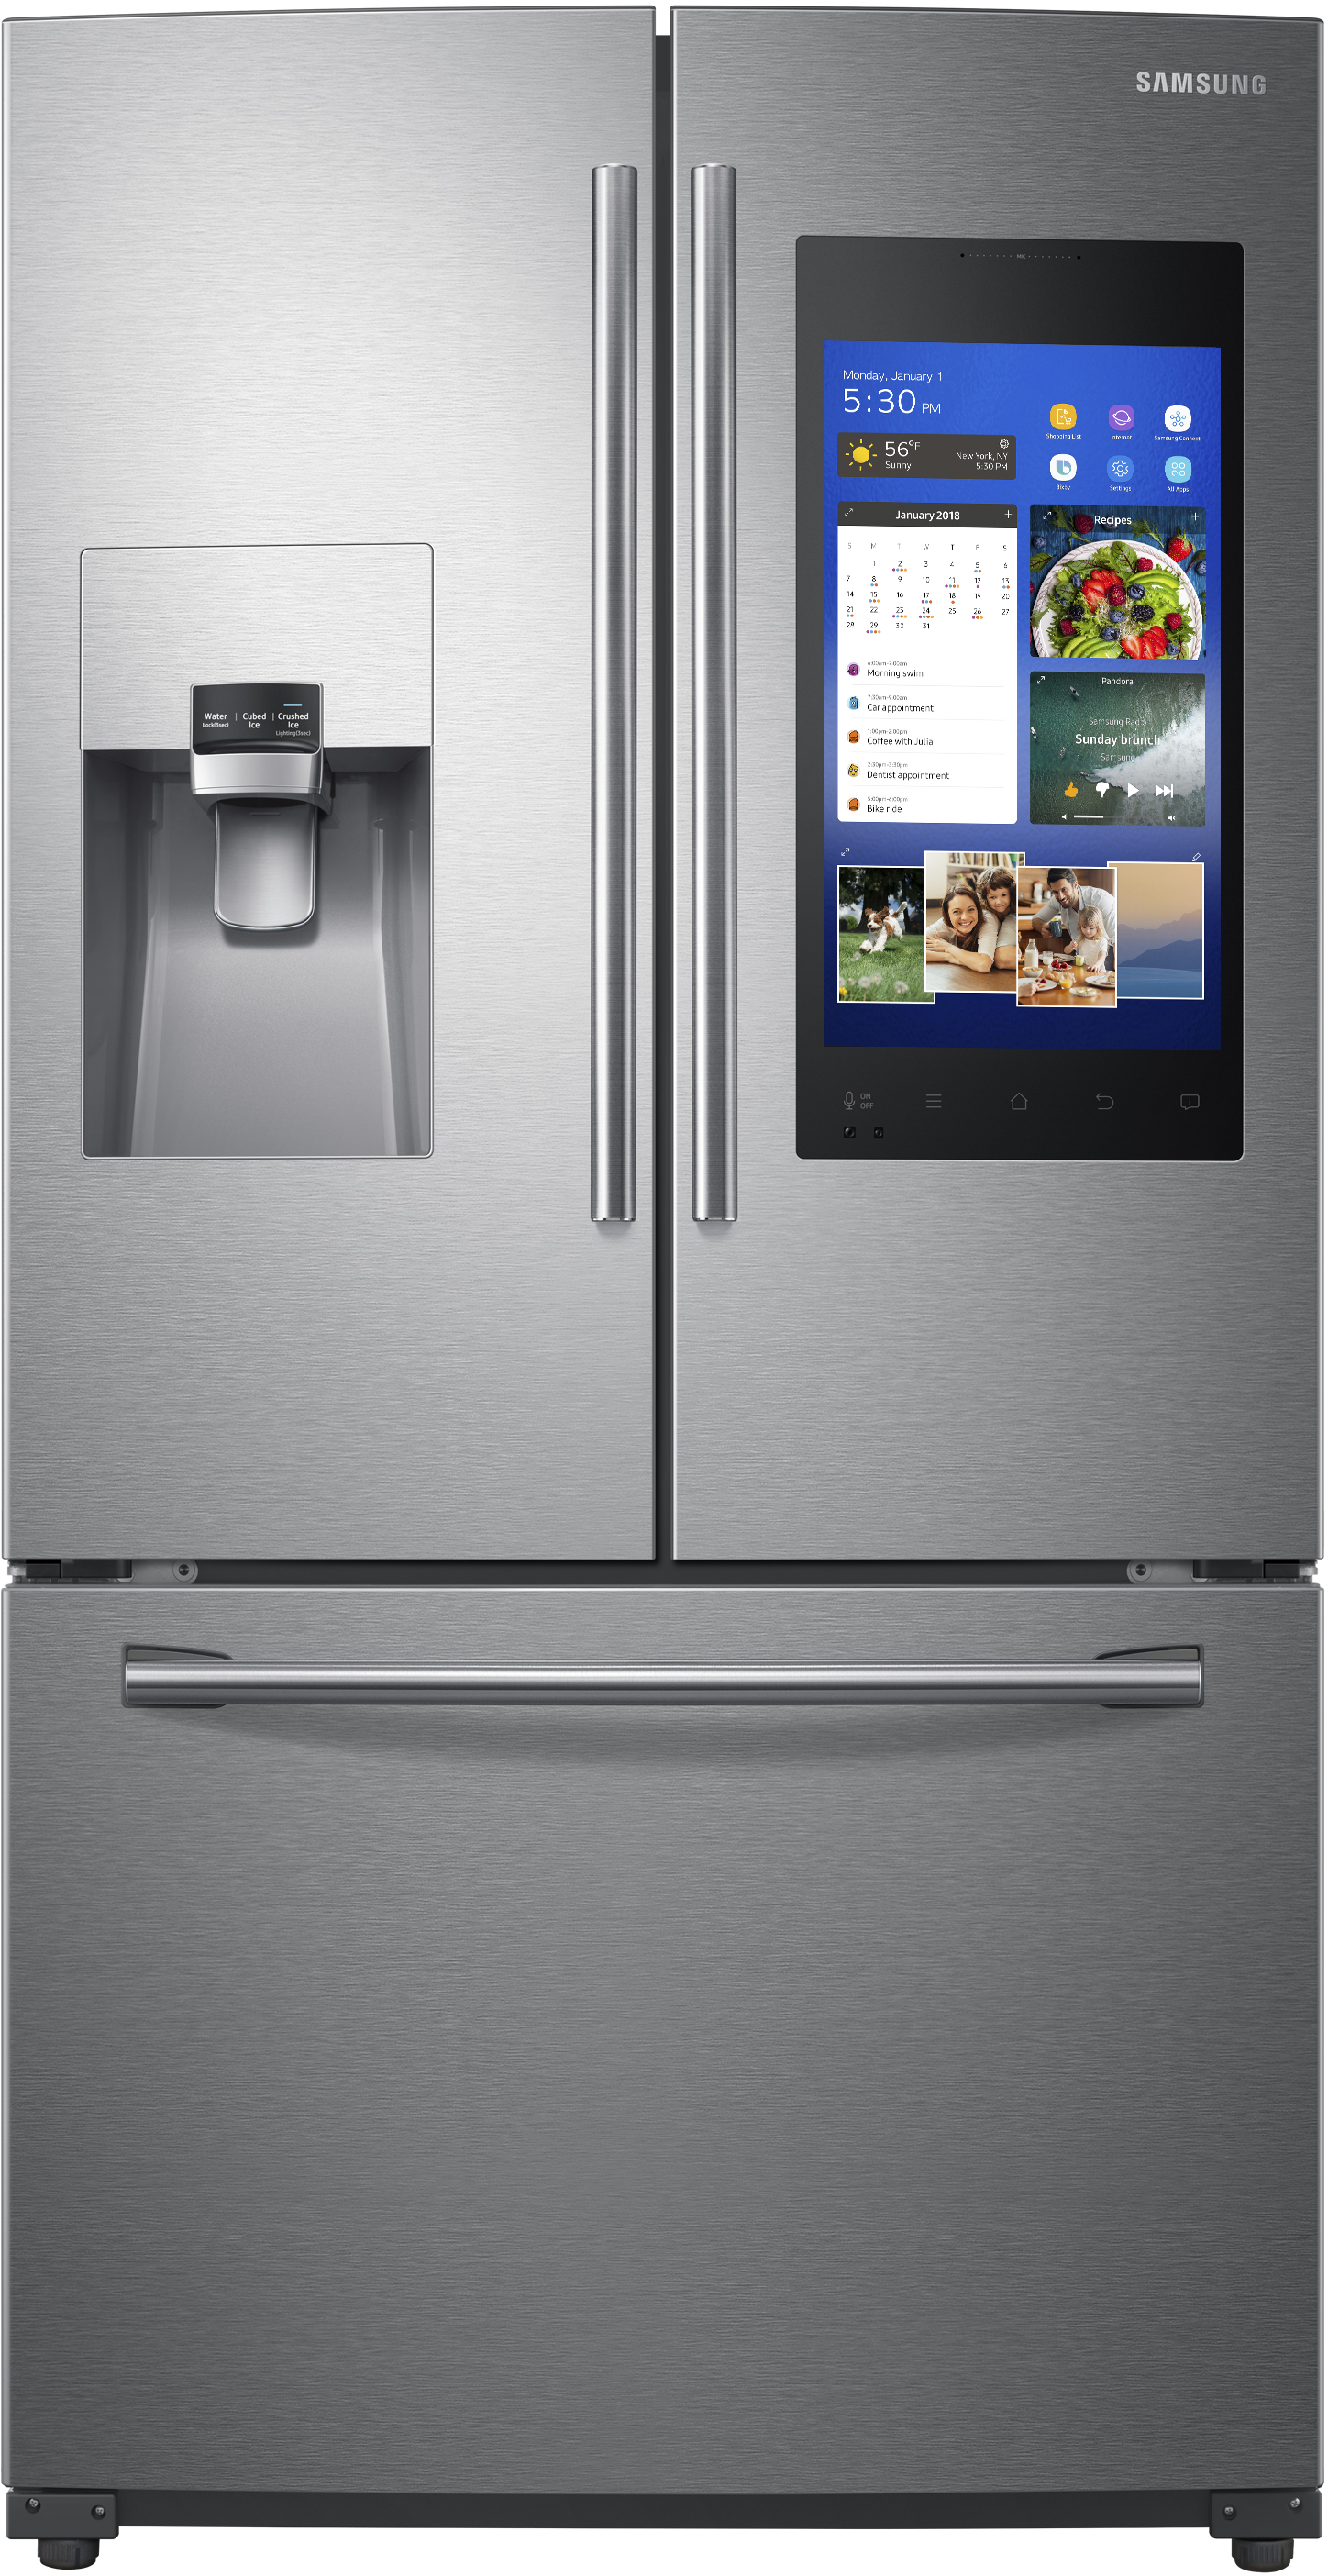 Samsung RF265BEAESR/AA 24.2 Cu. Ft. 3-Door French Door Refrigerator